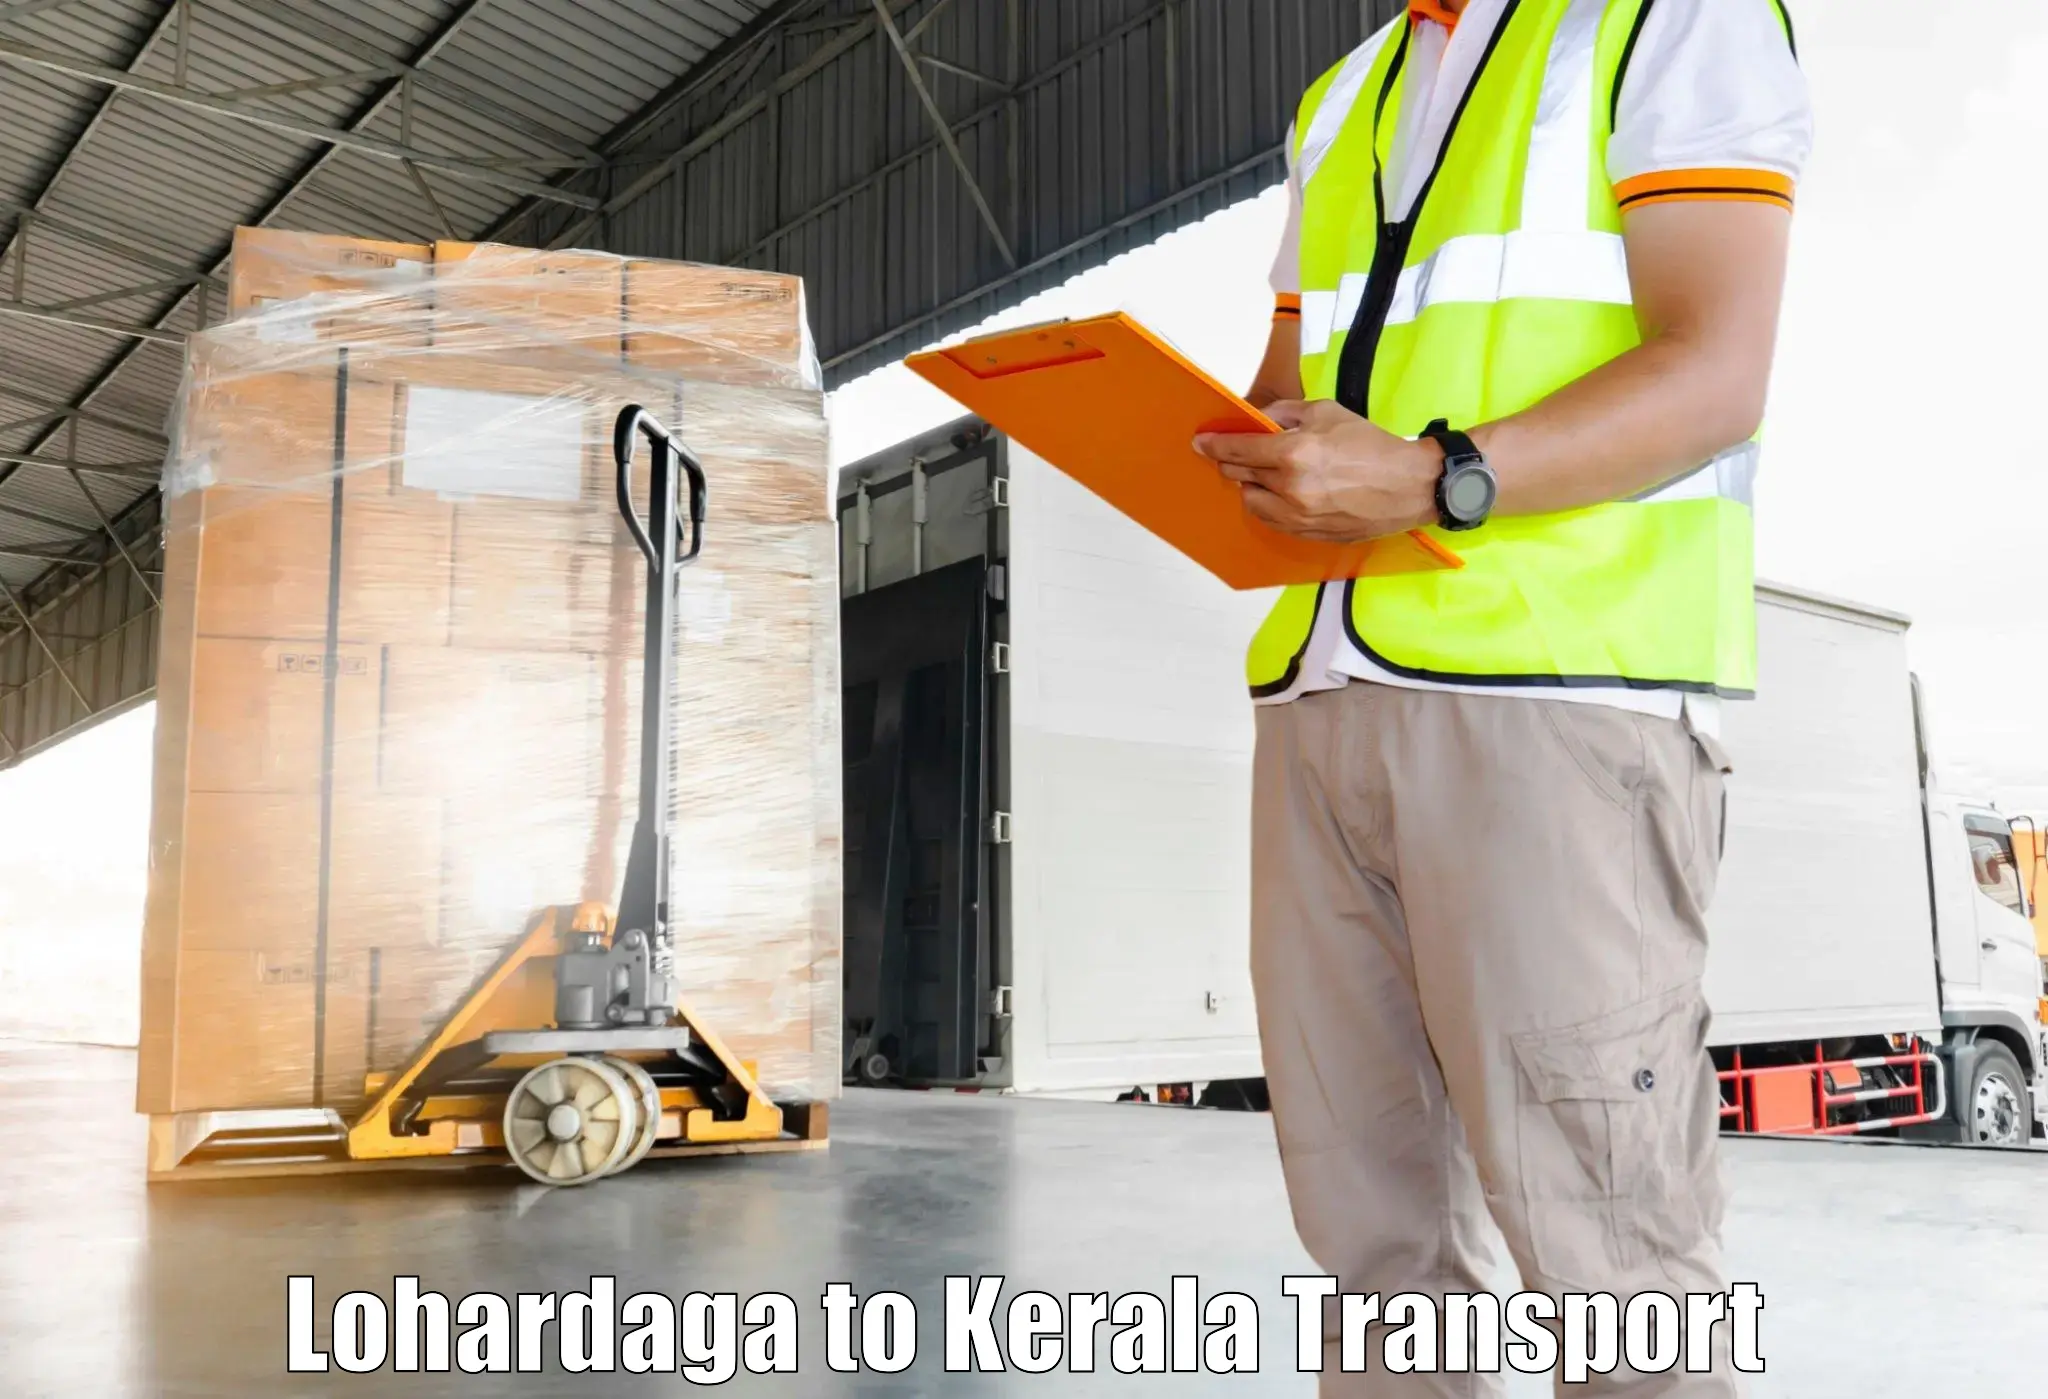 Vehicle transport services Lohardaga to Kozhikode